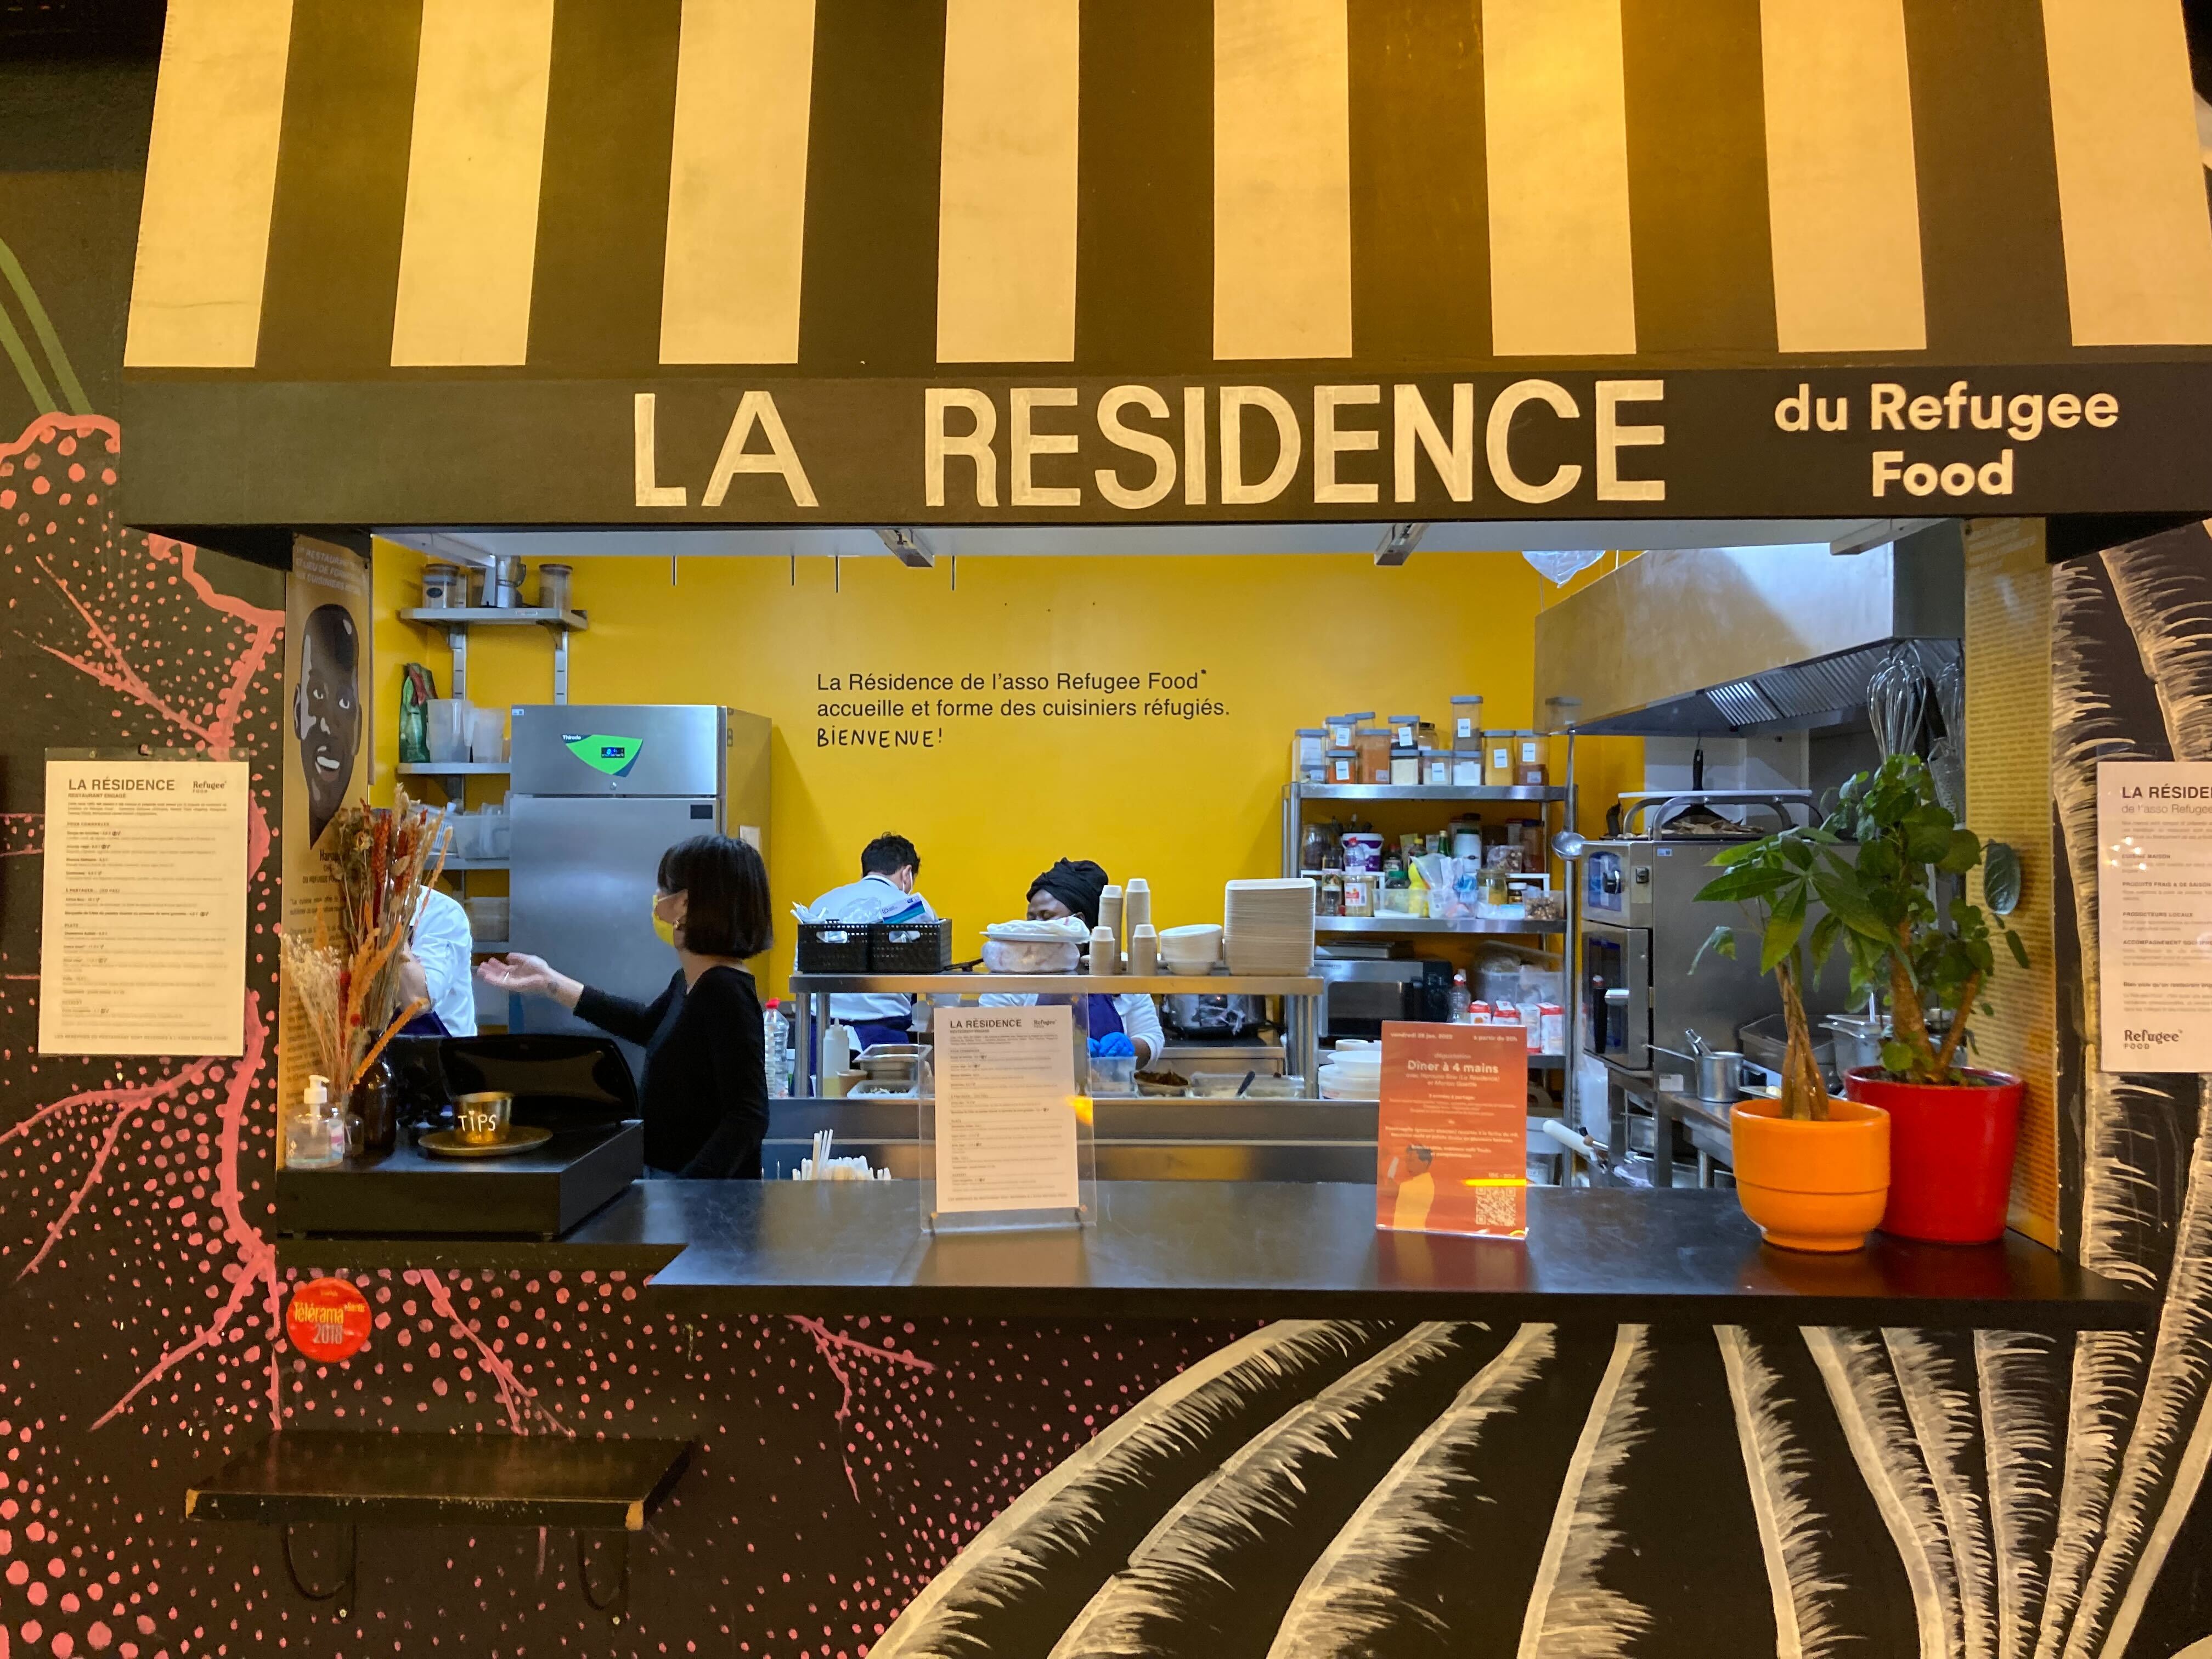 La Résidence, restaurant du Refugee Food